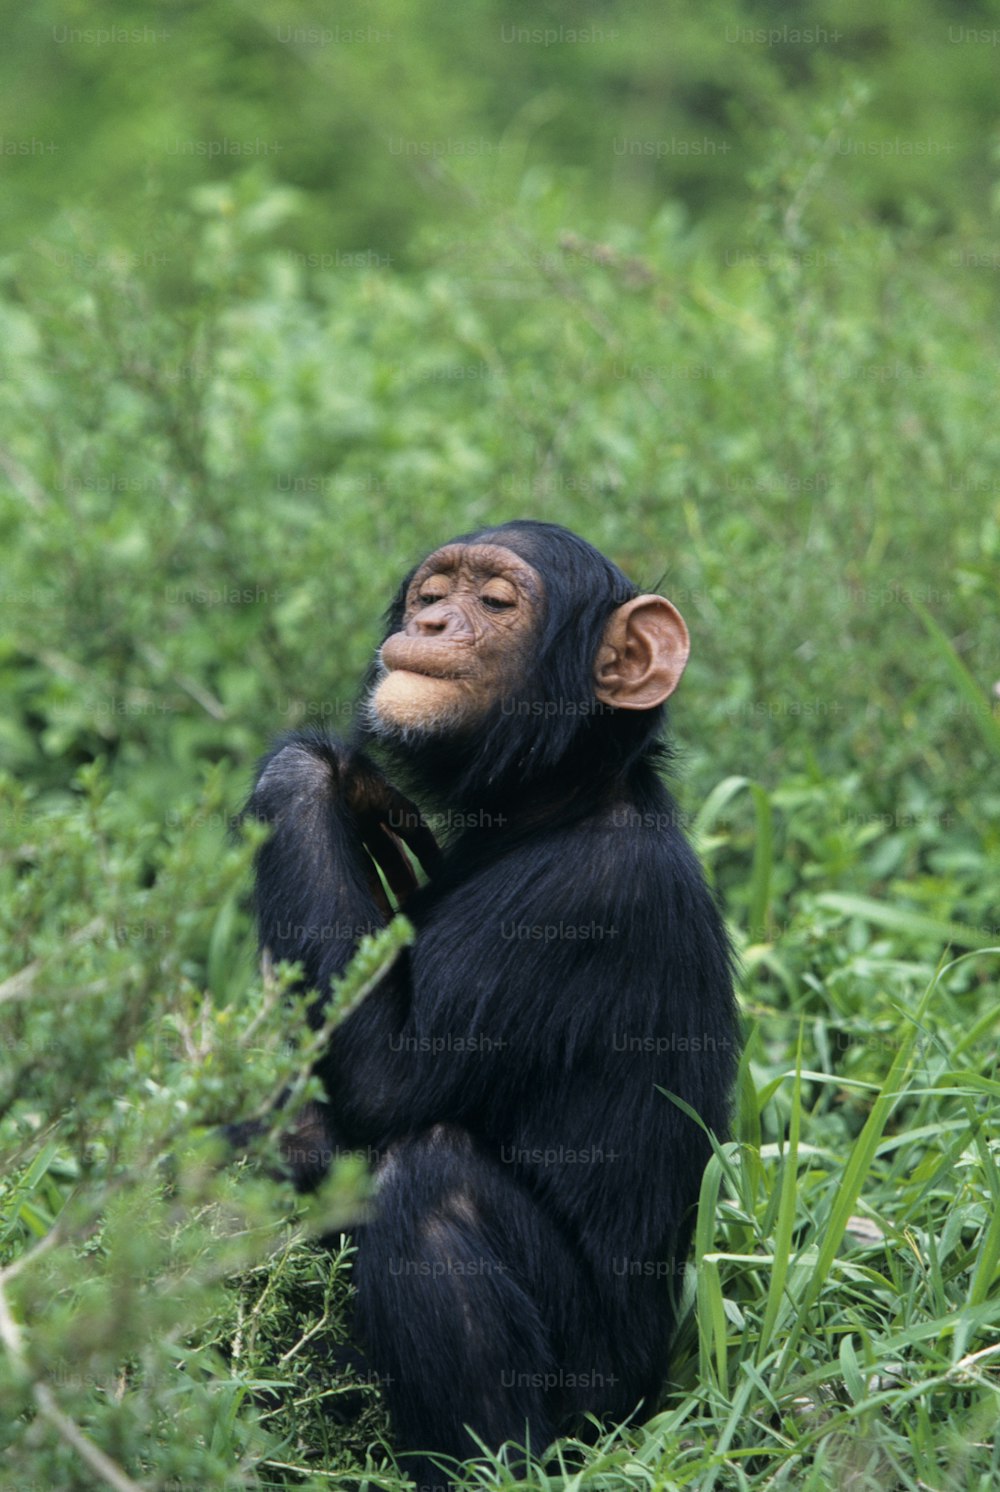 키 큰 풀밭에 앉아 있는 침팬지